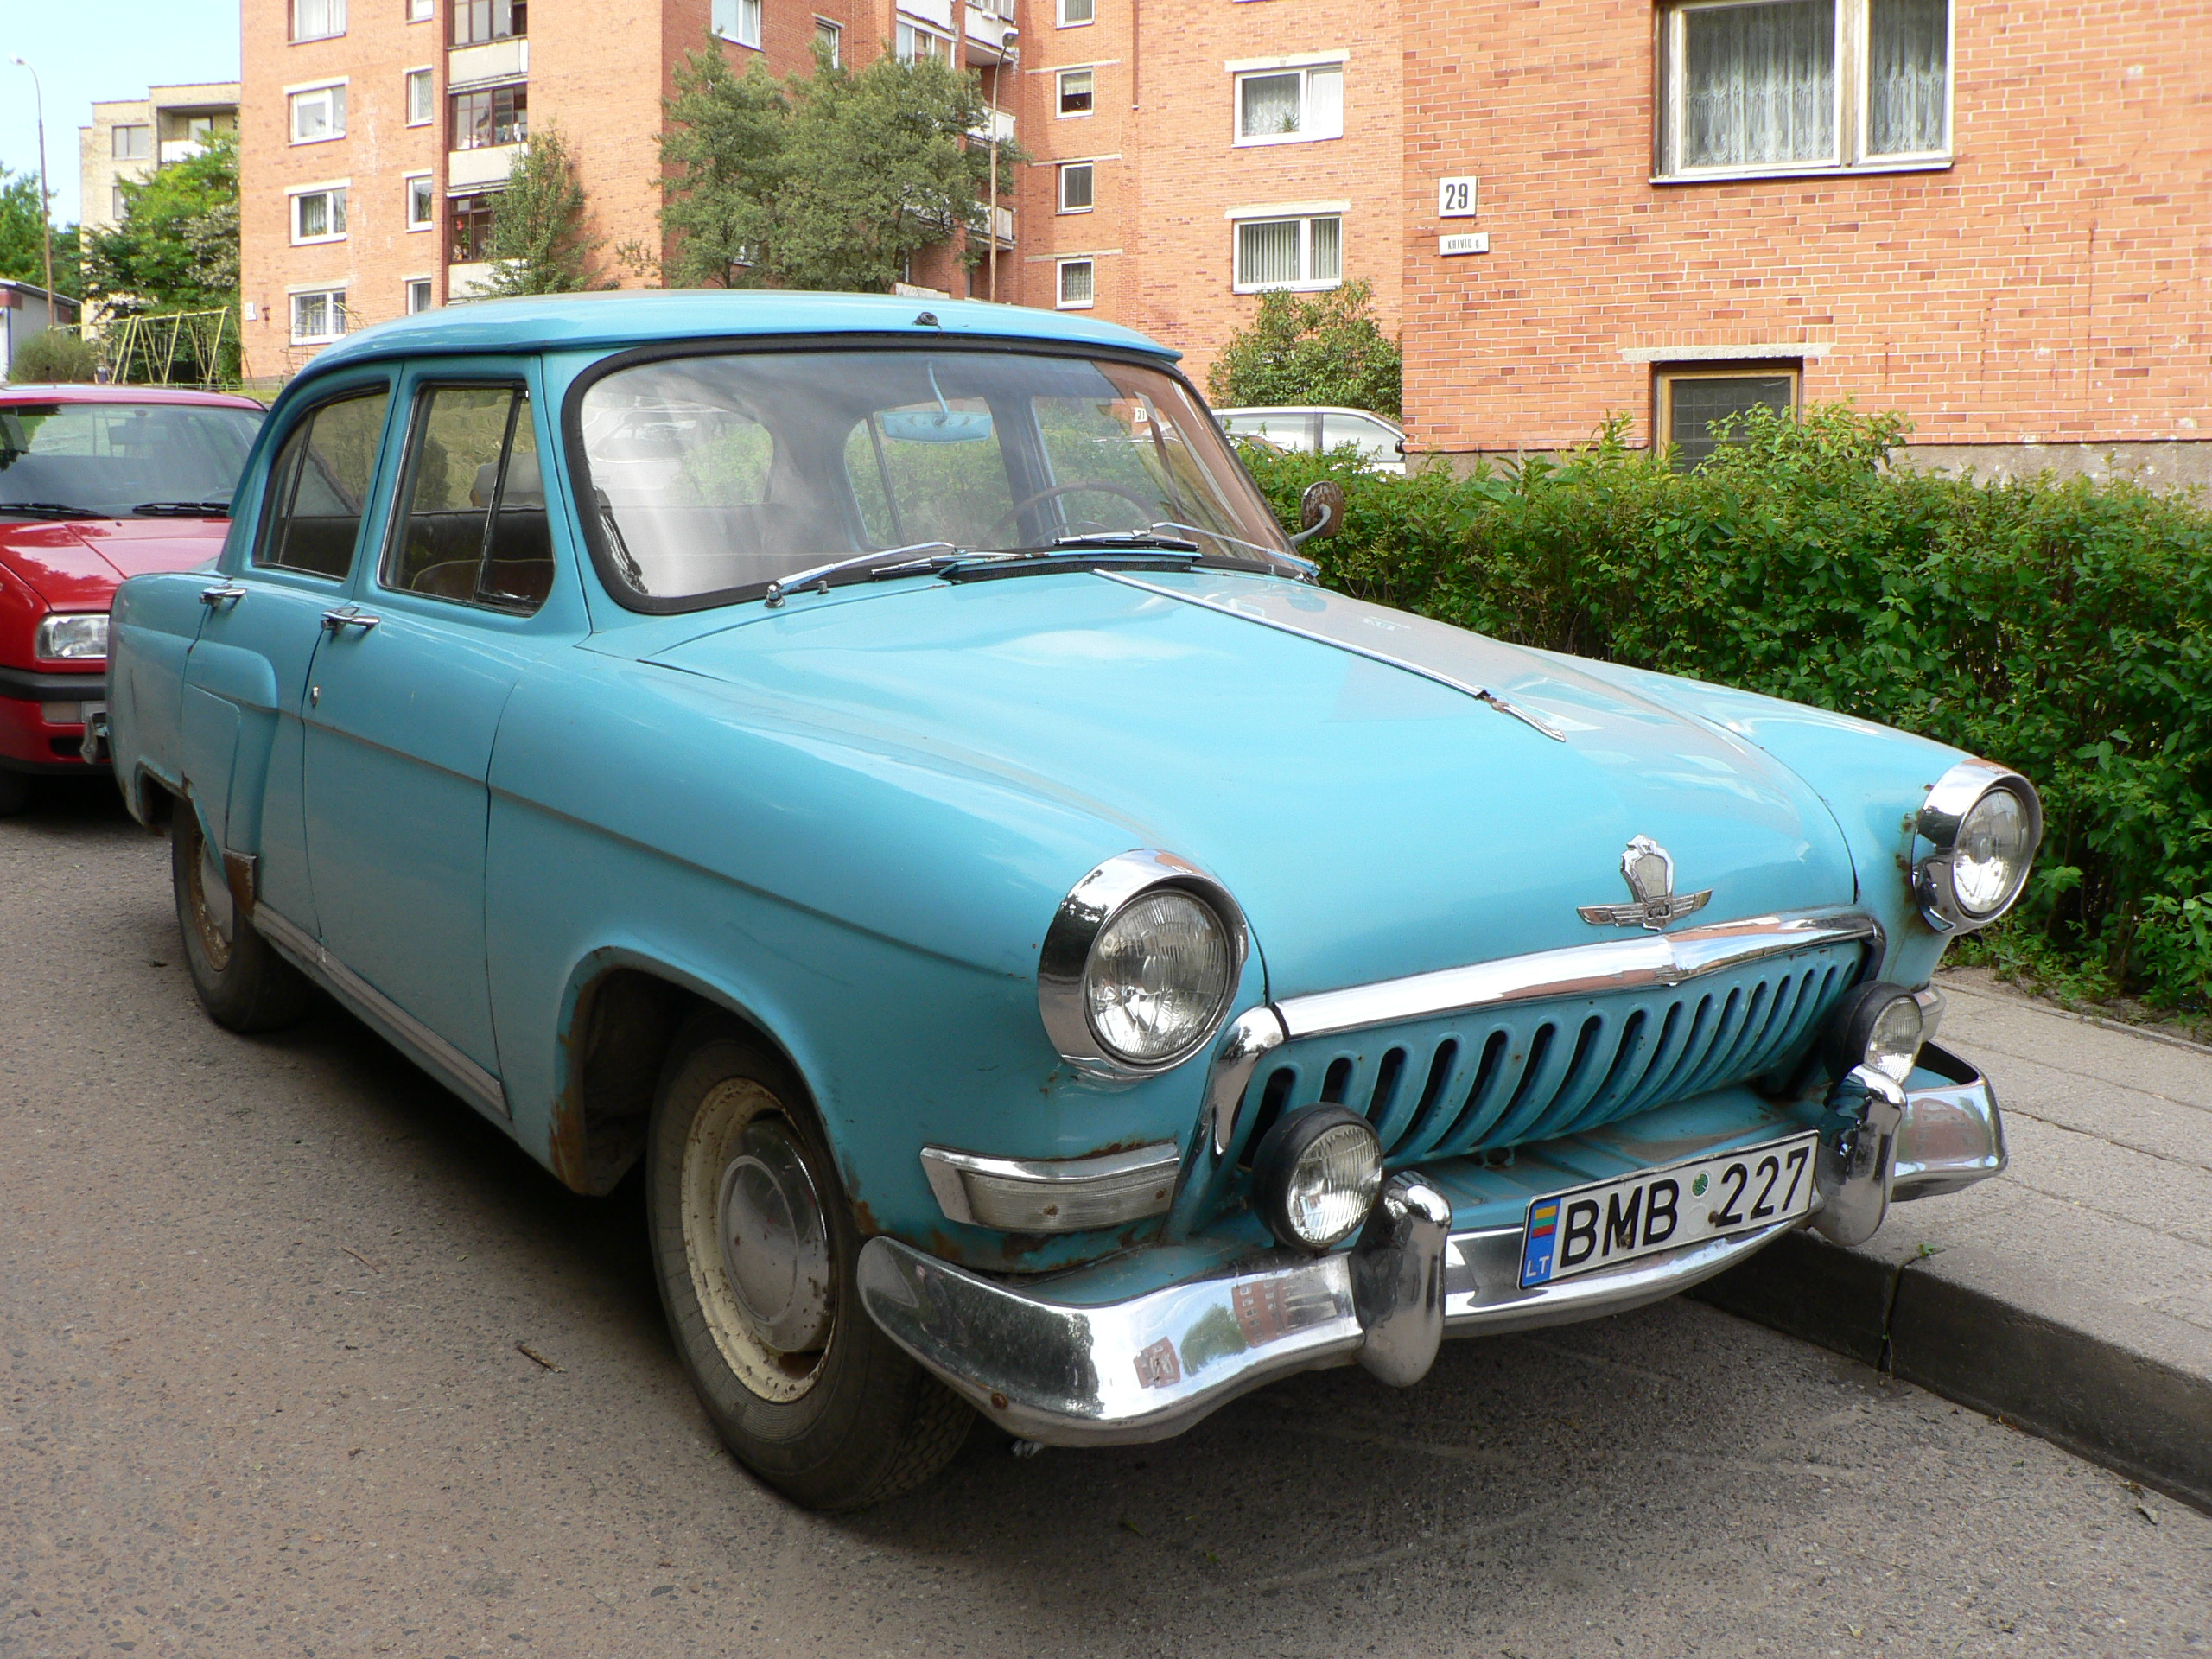 File:GAZ-21 (2nd series "i") "Volga" in Lithuania.jpg - Wikimedia ...